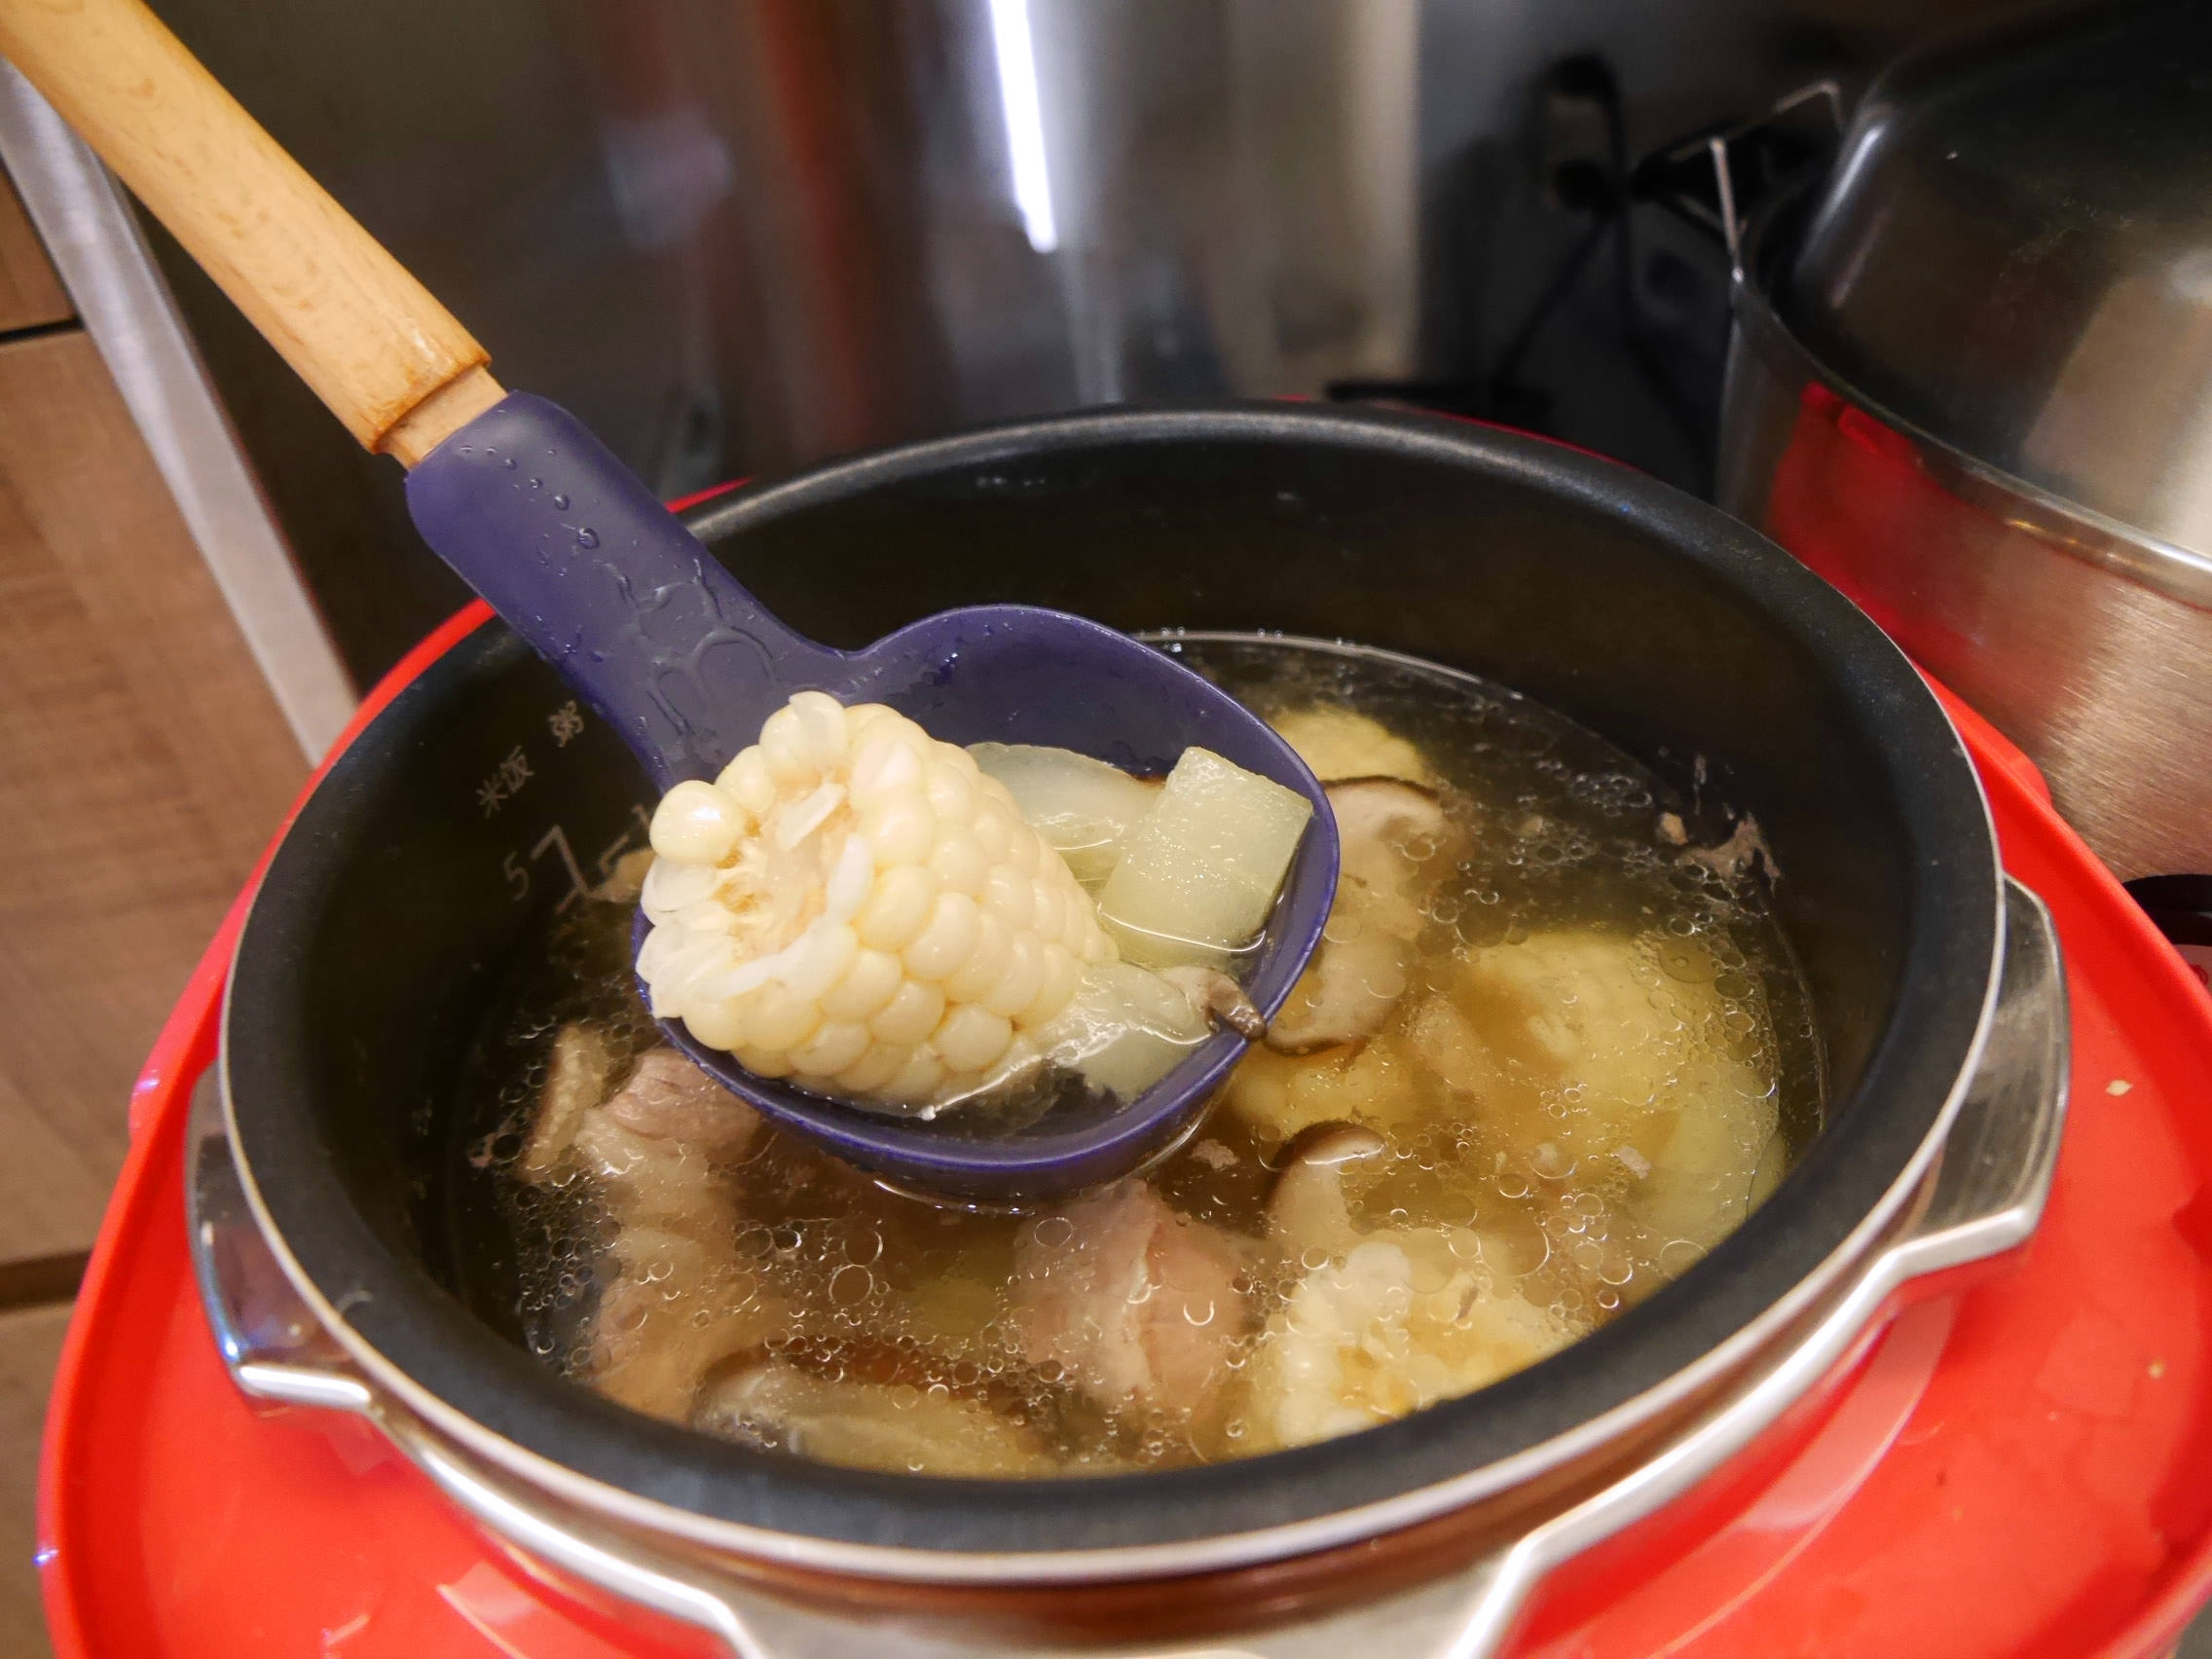 [好物] Midea 美的mini食代電子壓力鍋,不會煮飯也能輕鬆料理快速上菜的煮飯利器(群光電子總代理)